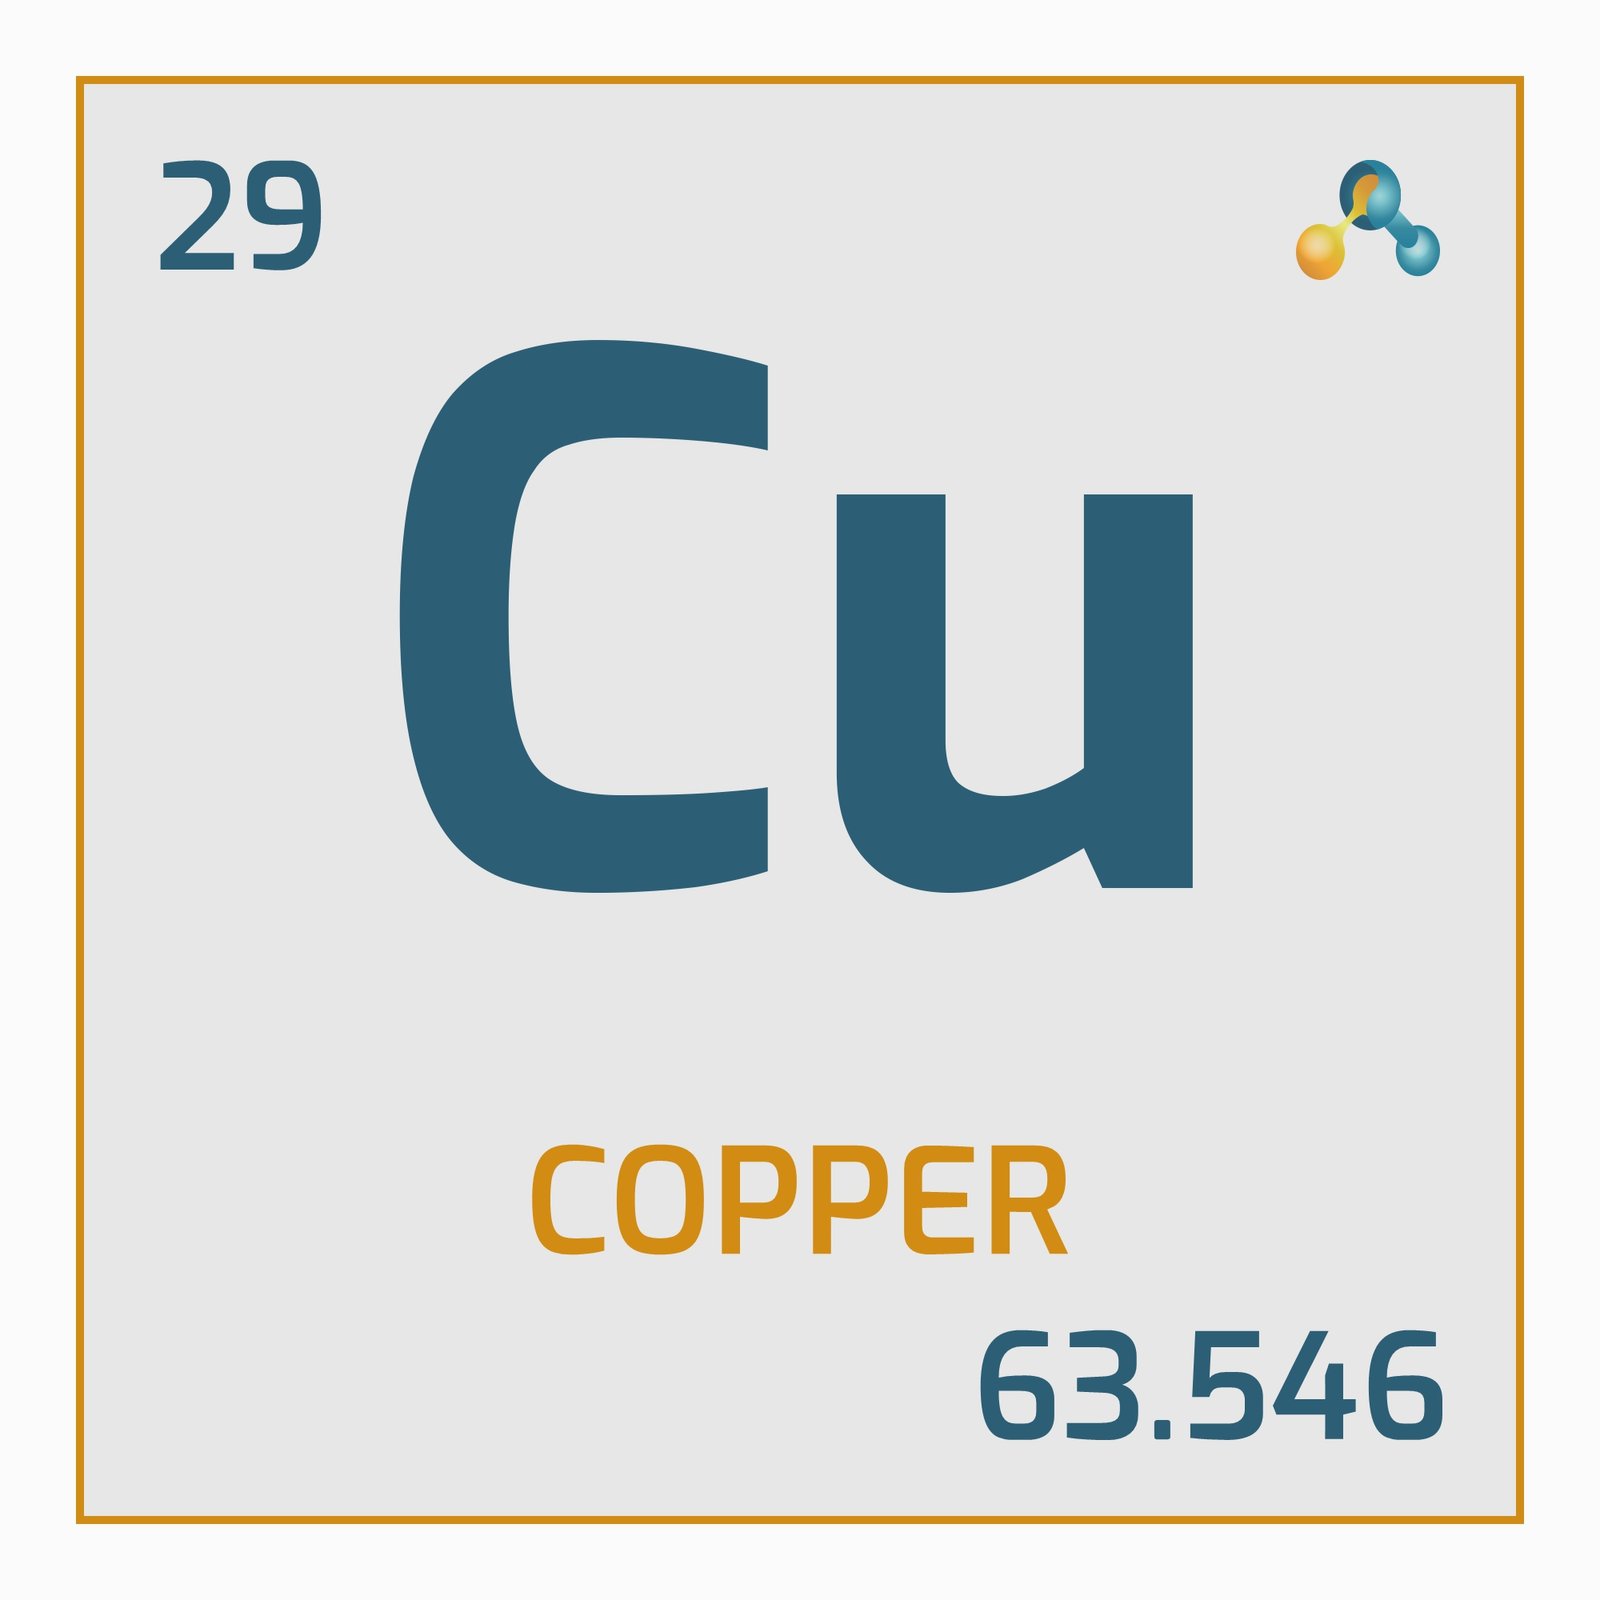 Copper